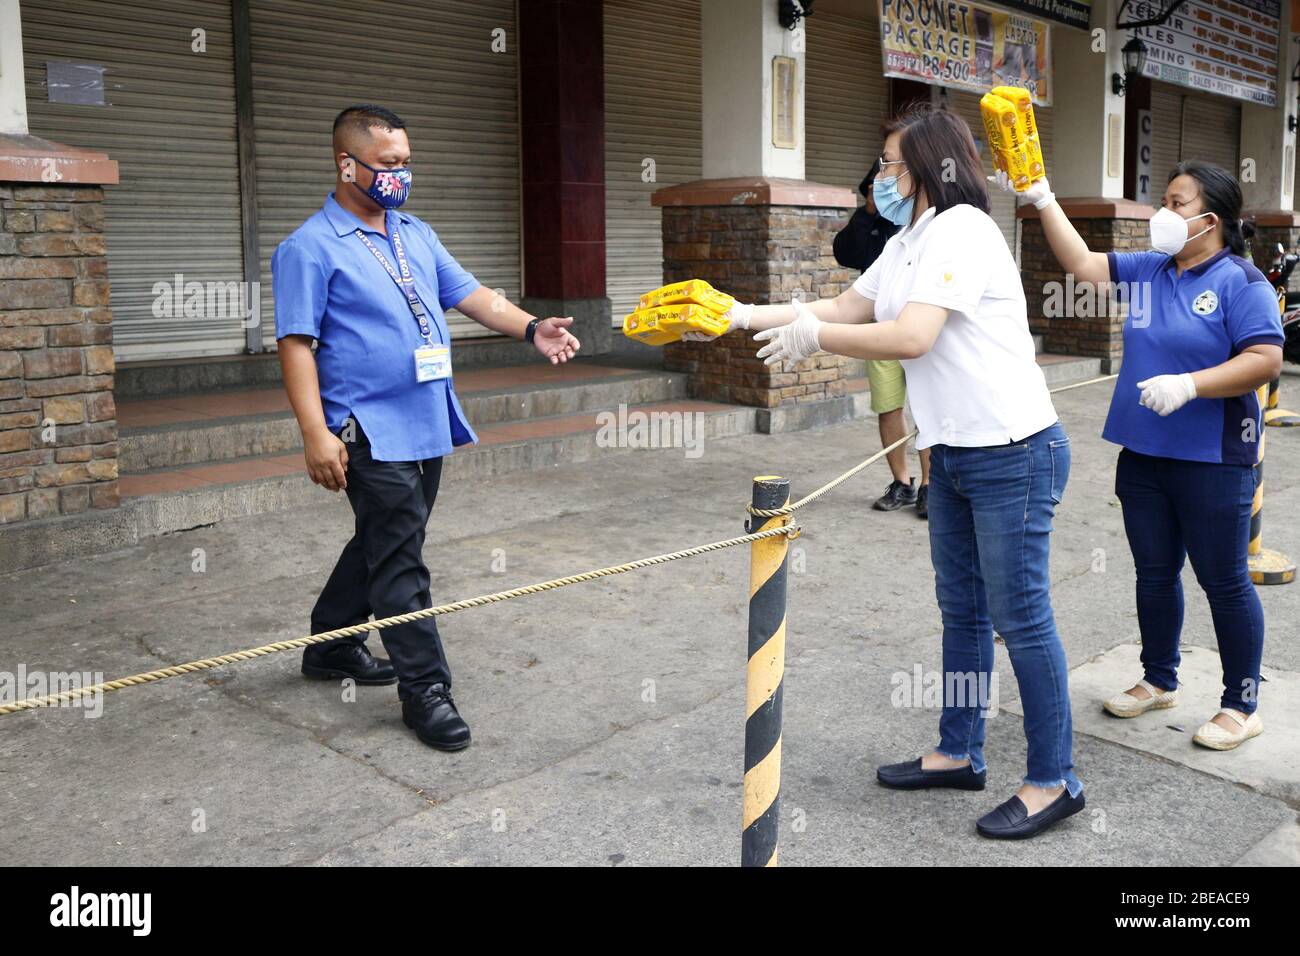 Antipolo City, Philippines - 9 avril 2020: Les représentants du gouvernement d'Antipolo City donnent des paquets alimentaires aux gens pendant le verrouillage en raison du virus Covid 19 Banque D'Images